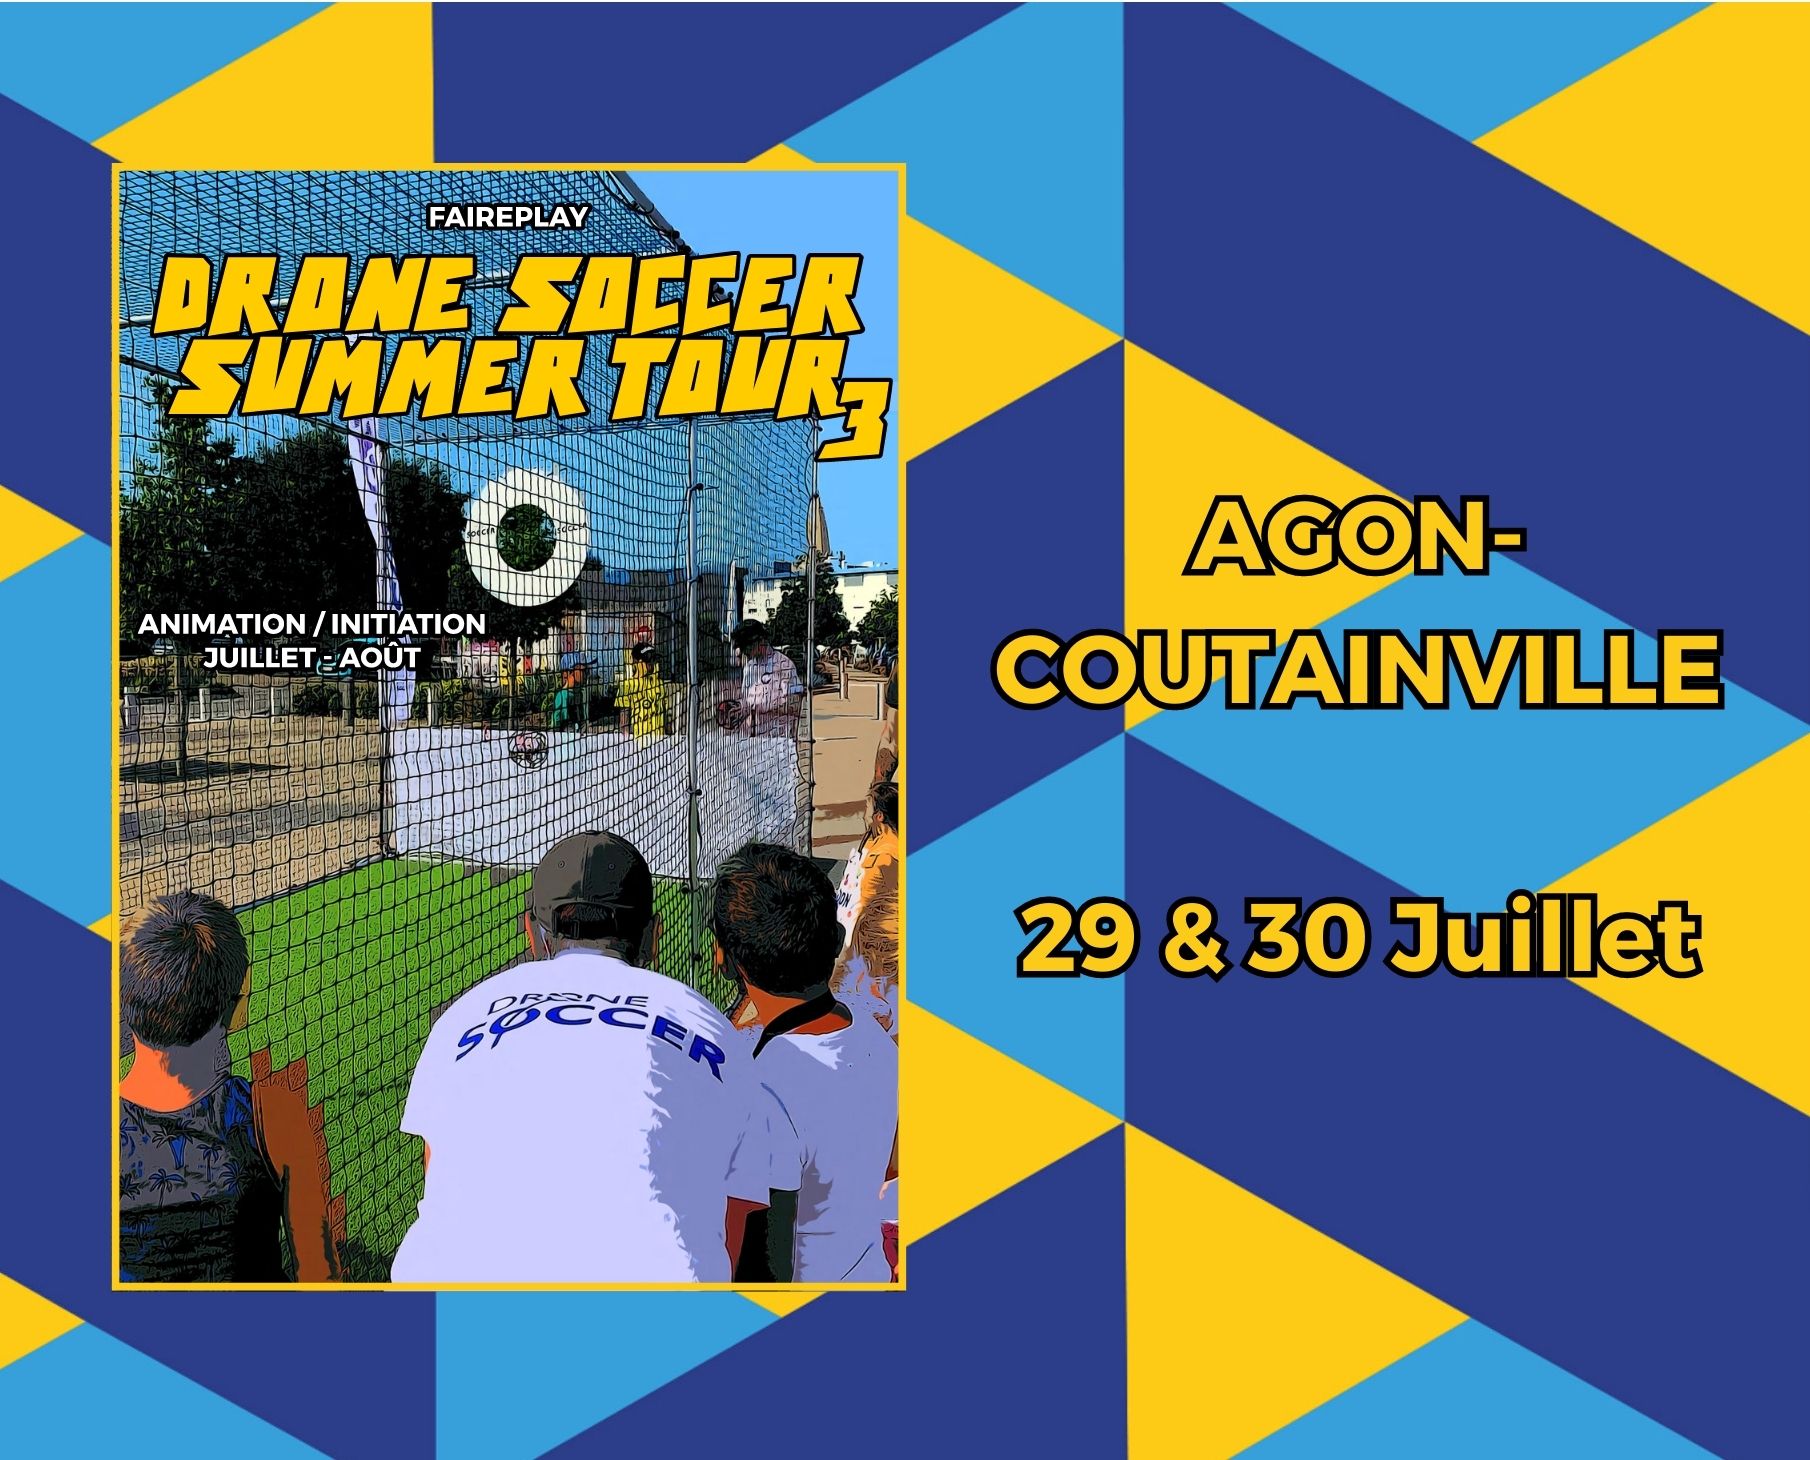 DSST 3 – Agon-Coutainville